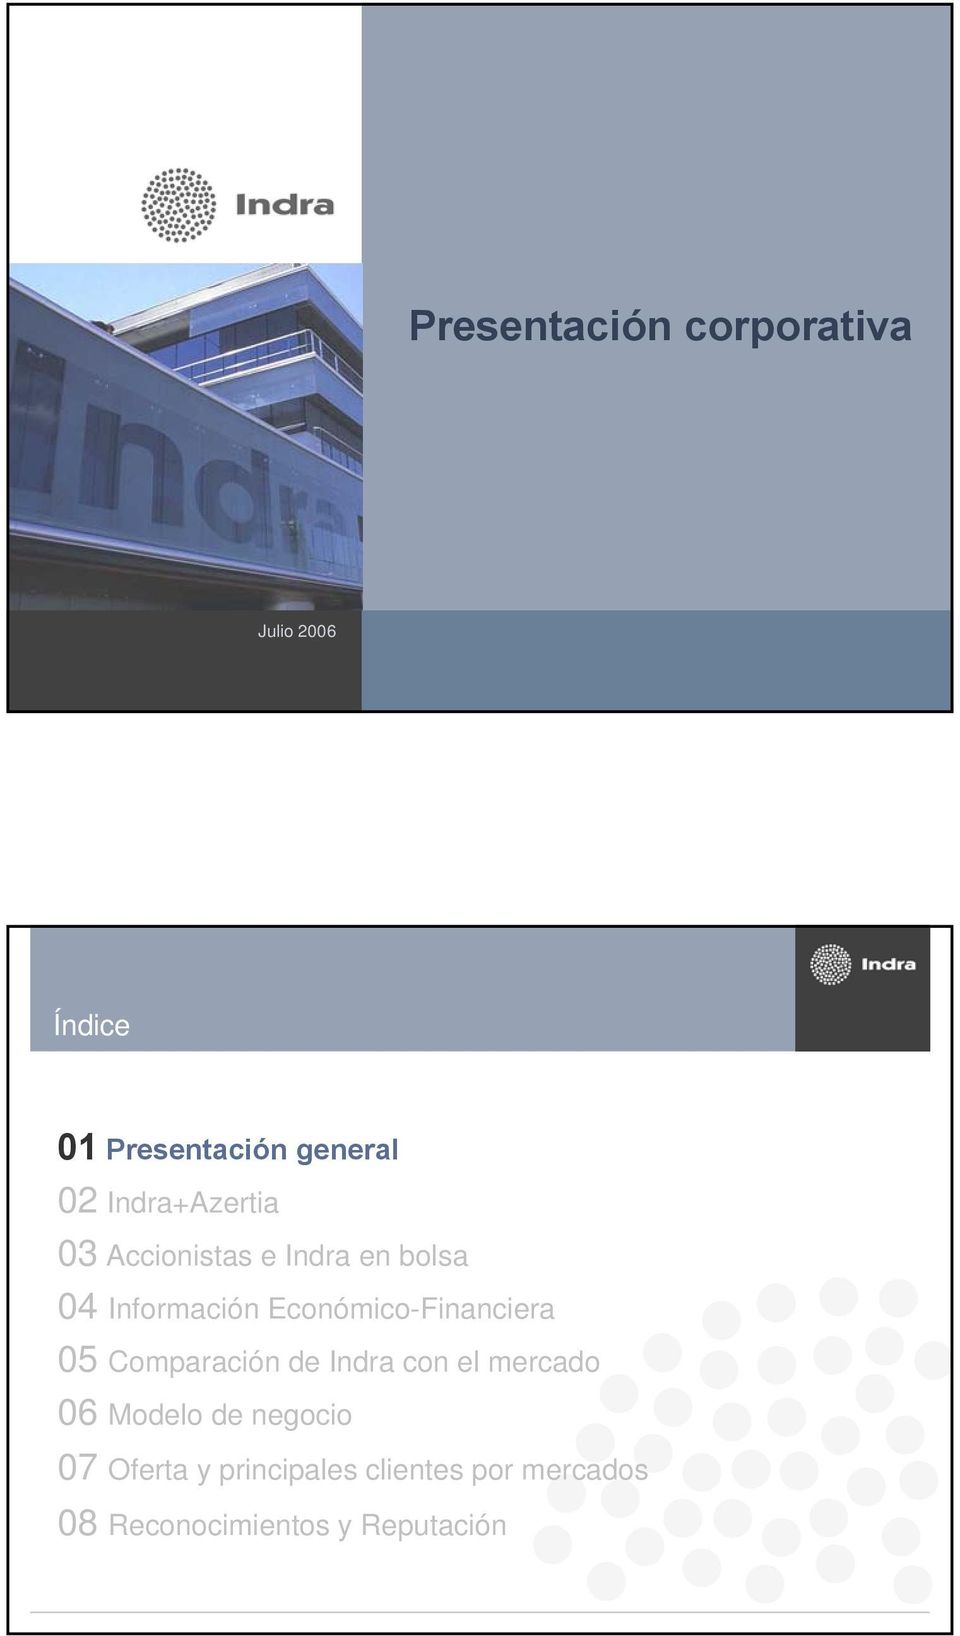 Económico-Financiera 05 Comparación de Indra con el mercado 06 Modelo de